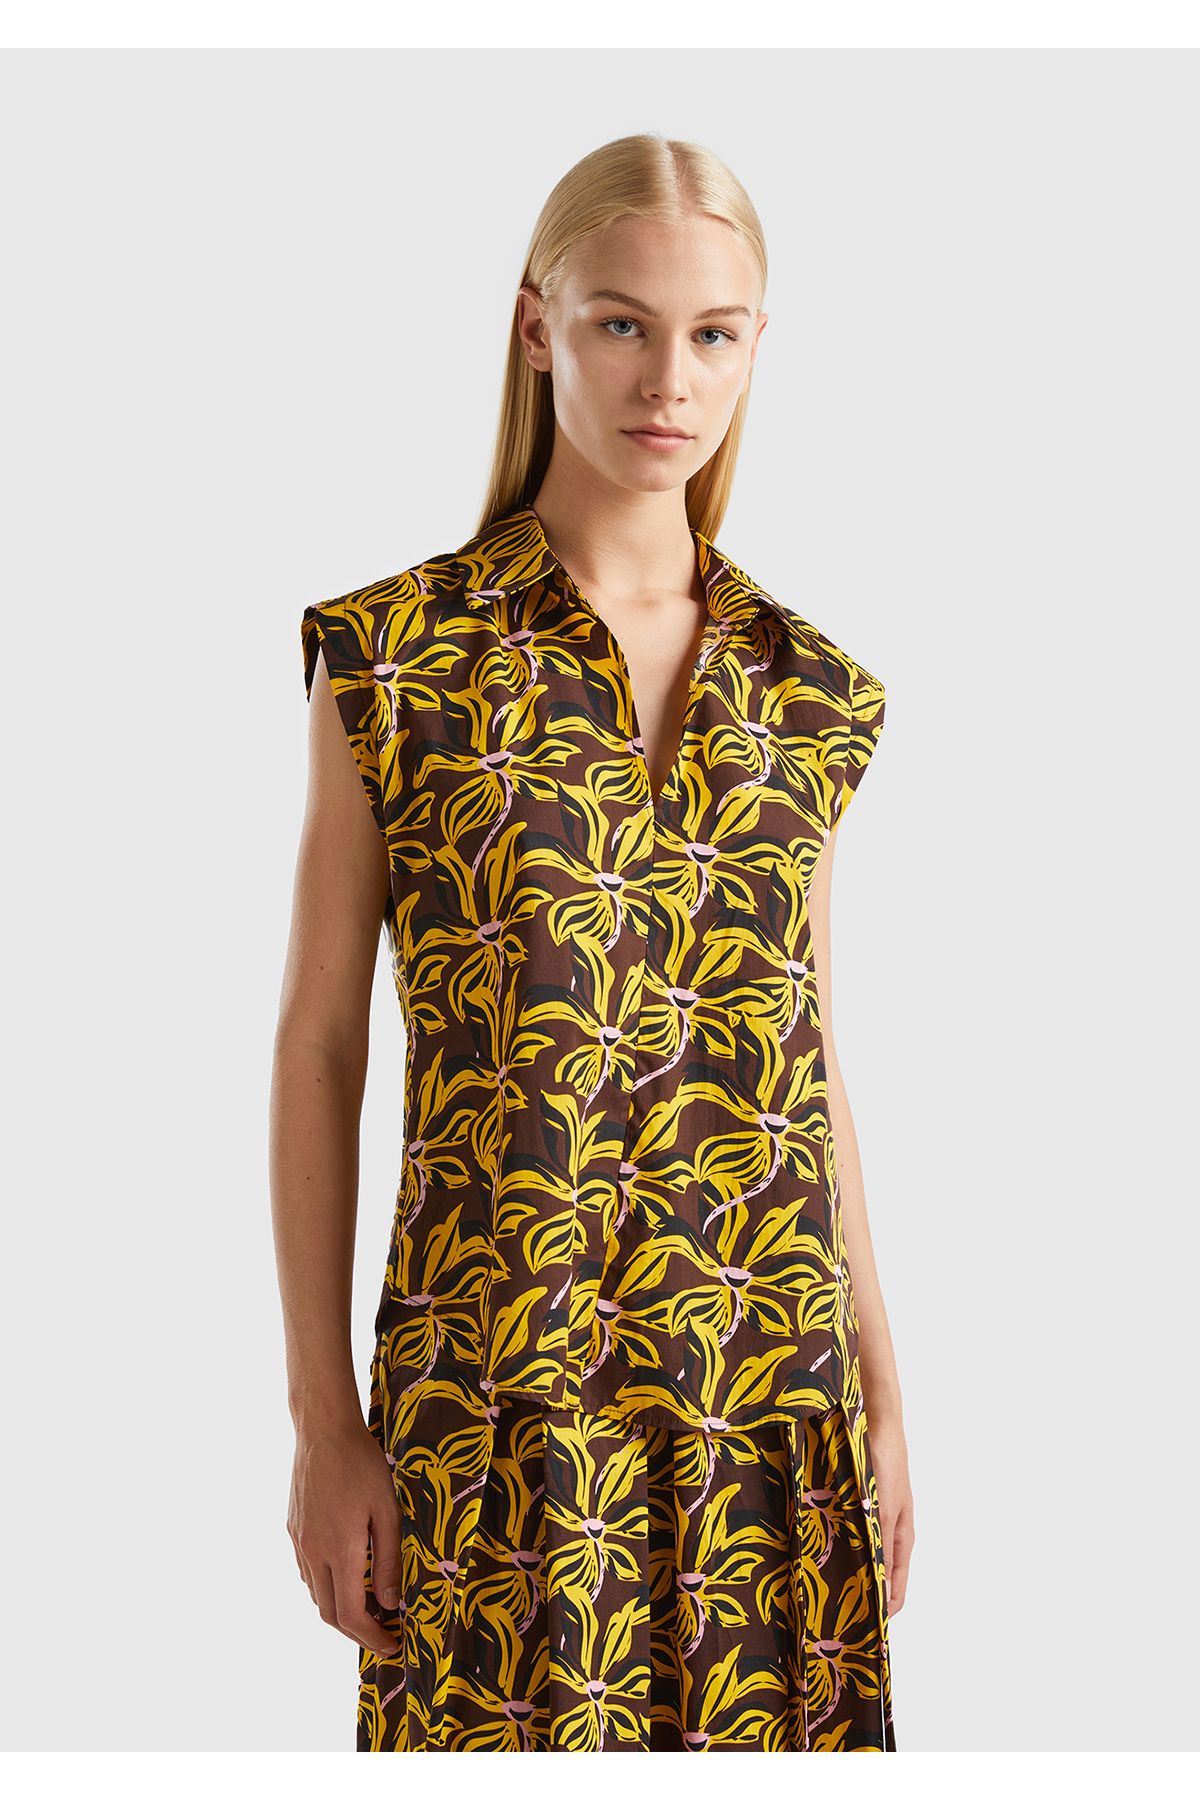 United Colors of Benetton Kadın Siyah Sarı Mix %100 Koton Kolsuz Çiçek Desenli Bluz